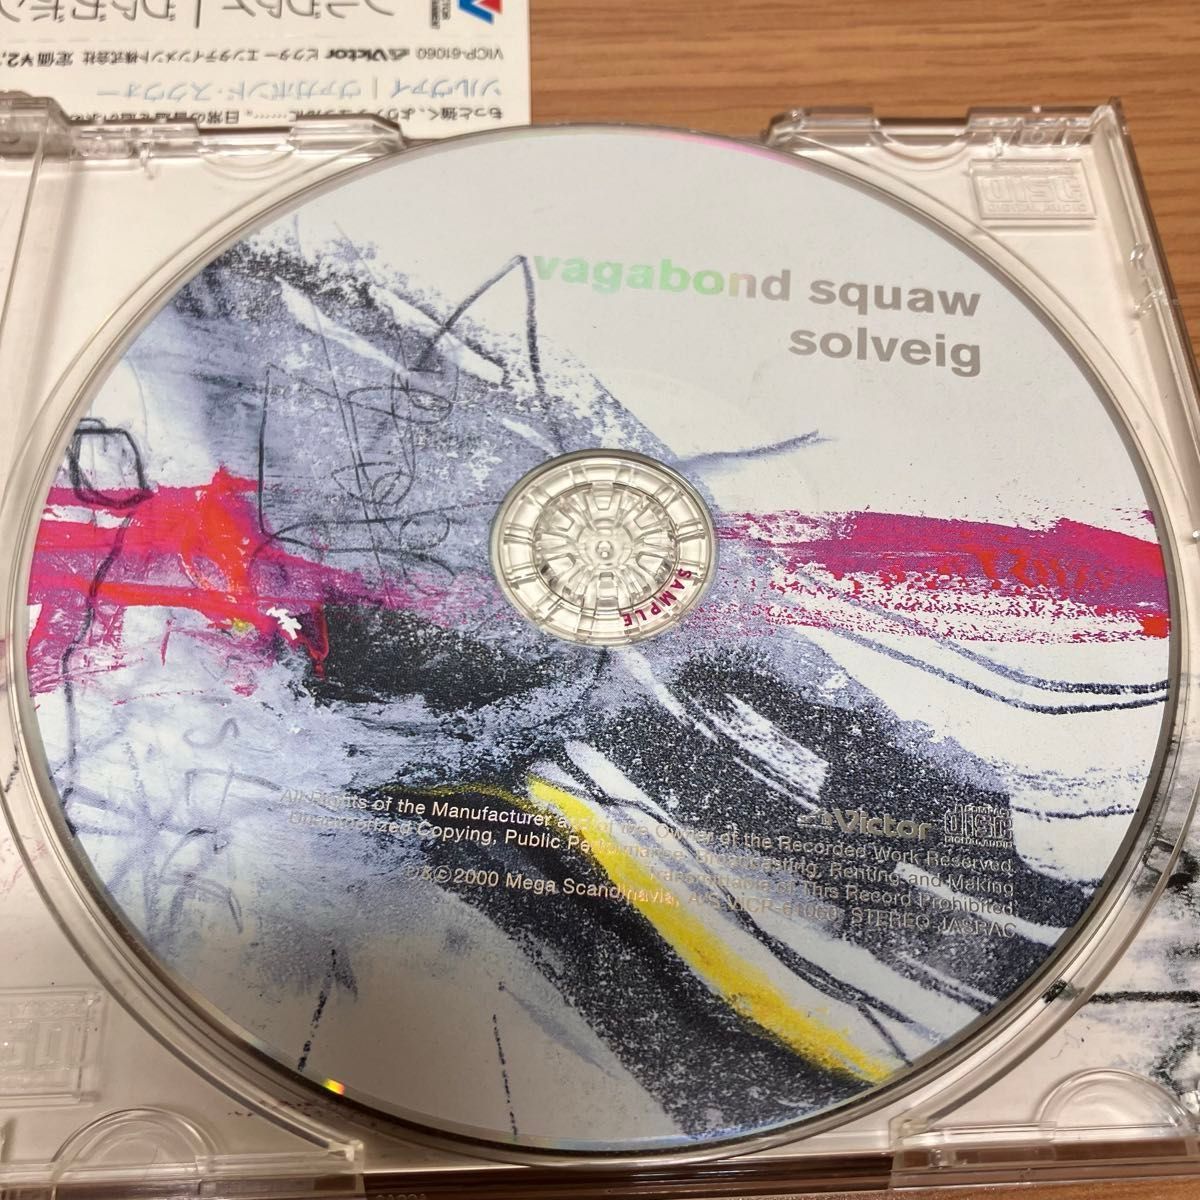 ソルヴァイ ヴァガボンド・スクウォー 音楽CD 洋楽 ポップス サンプル盤